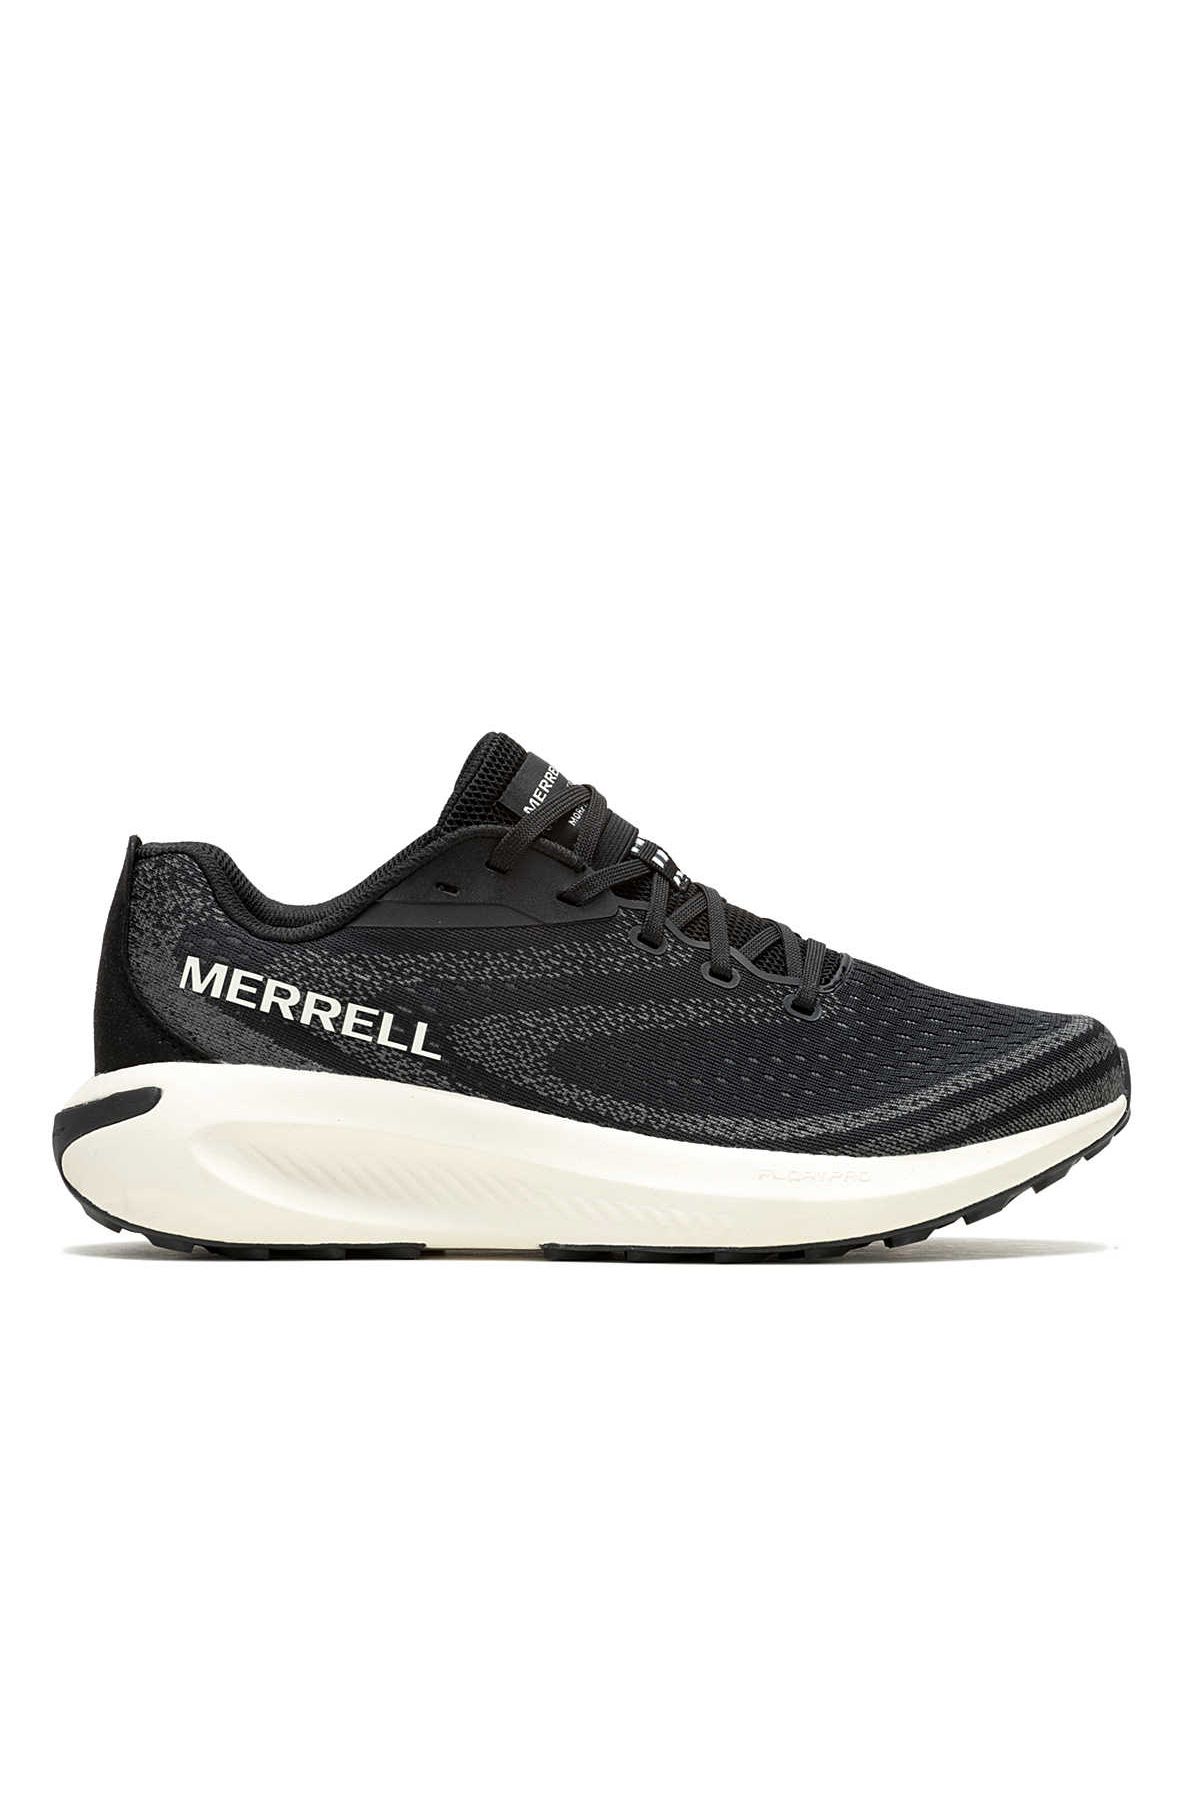 Merrell Morphlite Kadın Koşu Ayakkabı